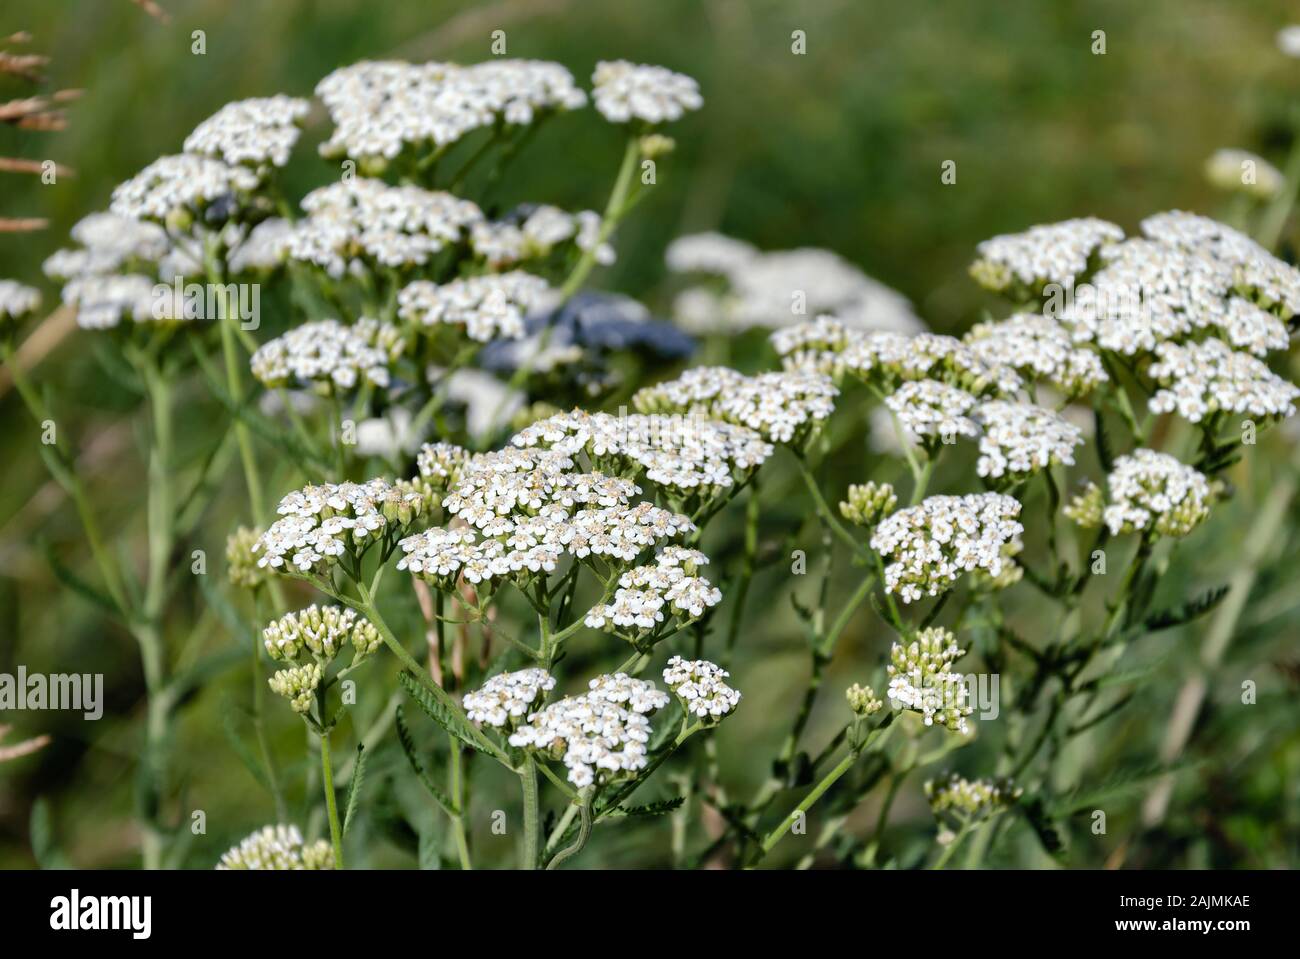 Wiese Gras, Feld Schafgarbe blüht mit weißen Blumen auf einem Hintergrund von grünem Gras, Nahaufnahme Stockfoto